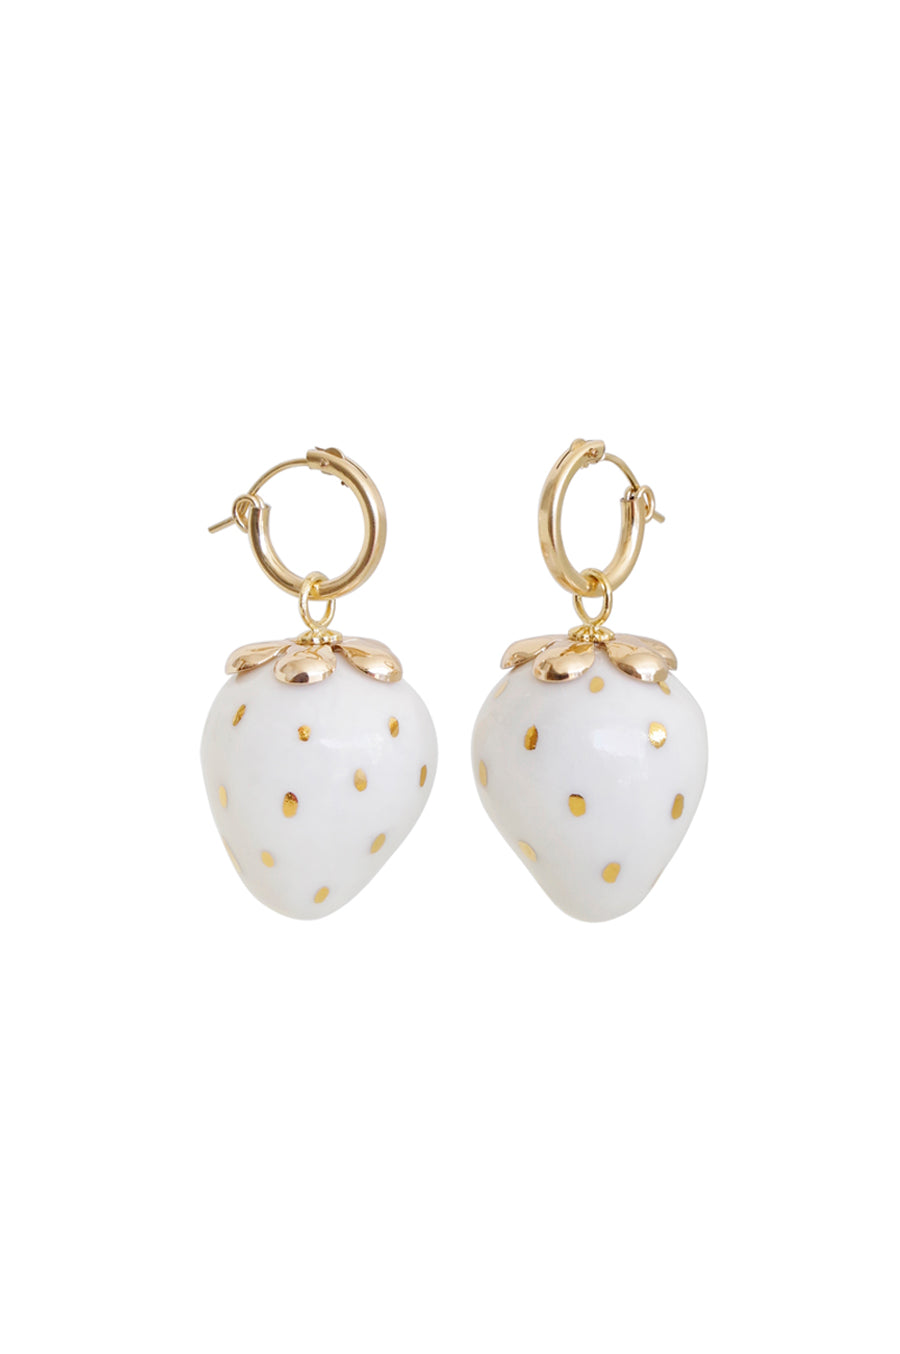 White porcelain earring